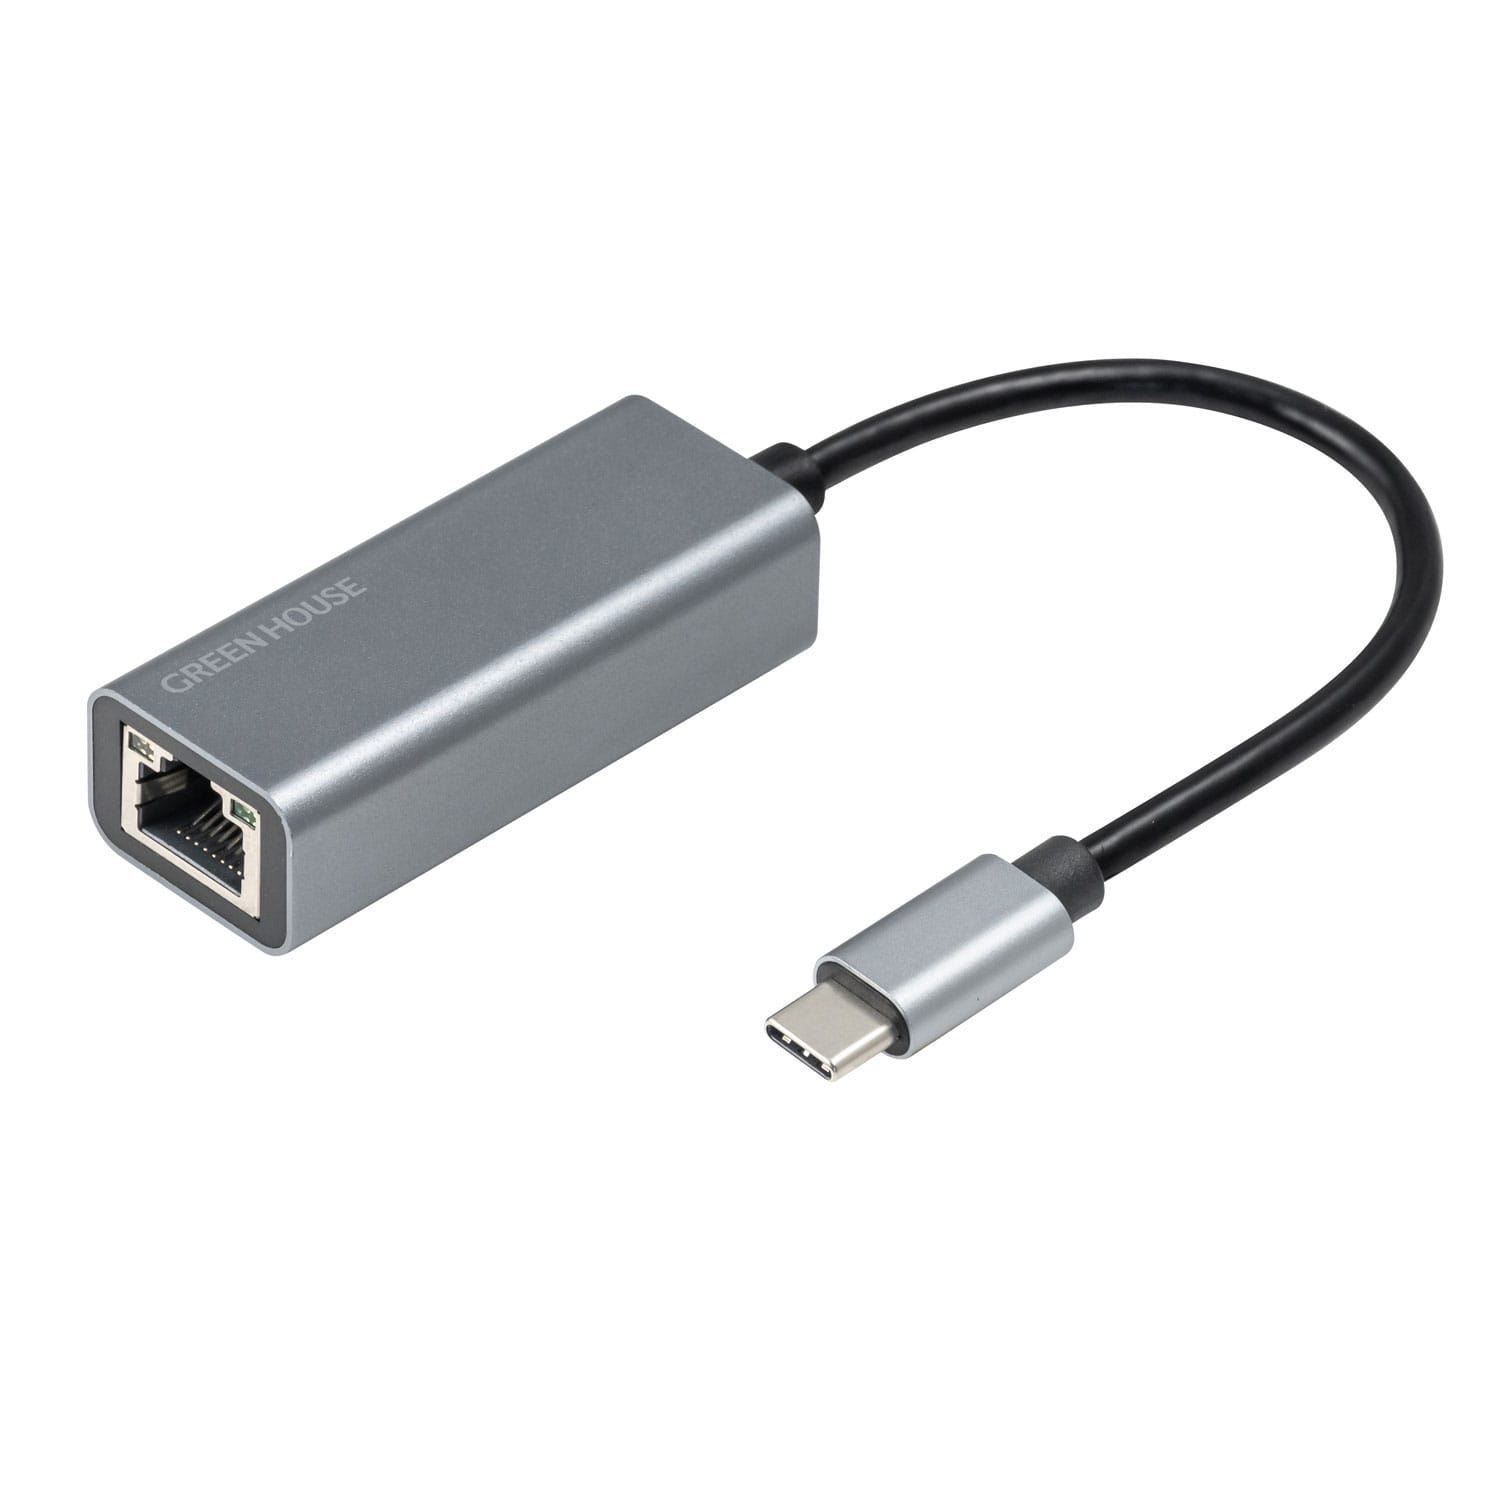 グリーンハウス、USB-C接続のギガビットLANアダプタを発売